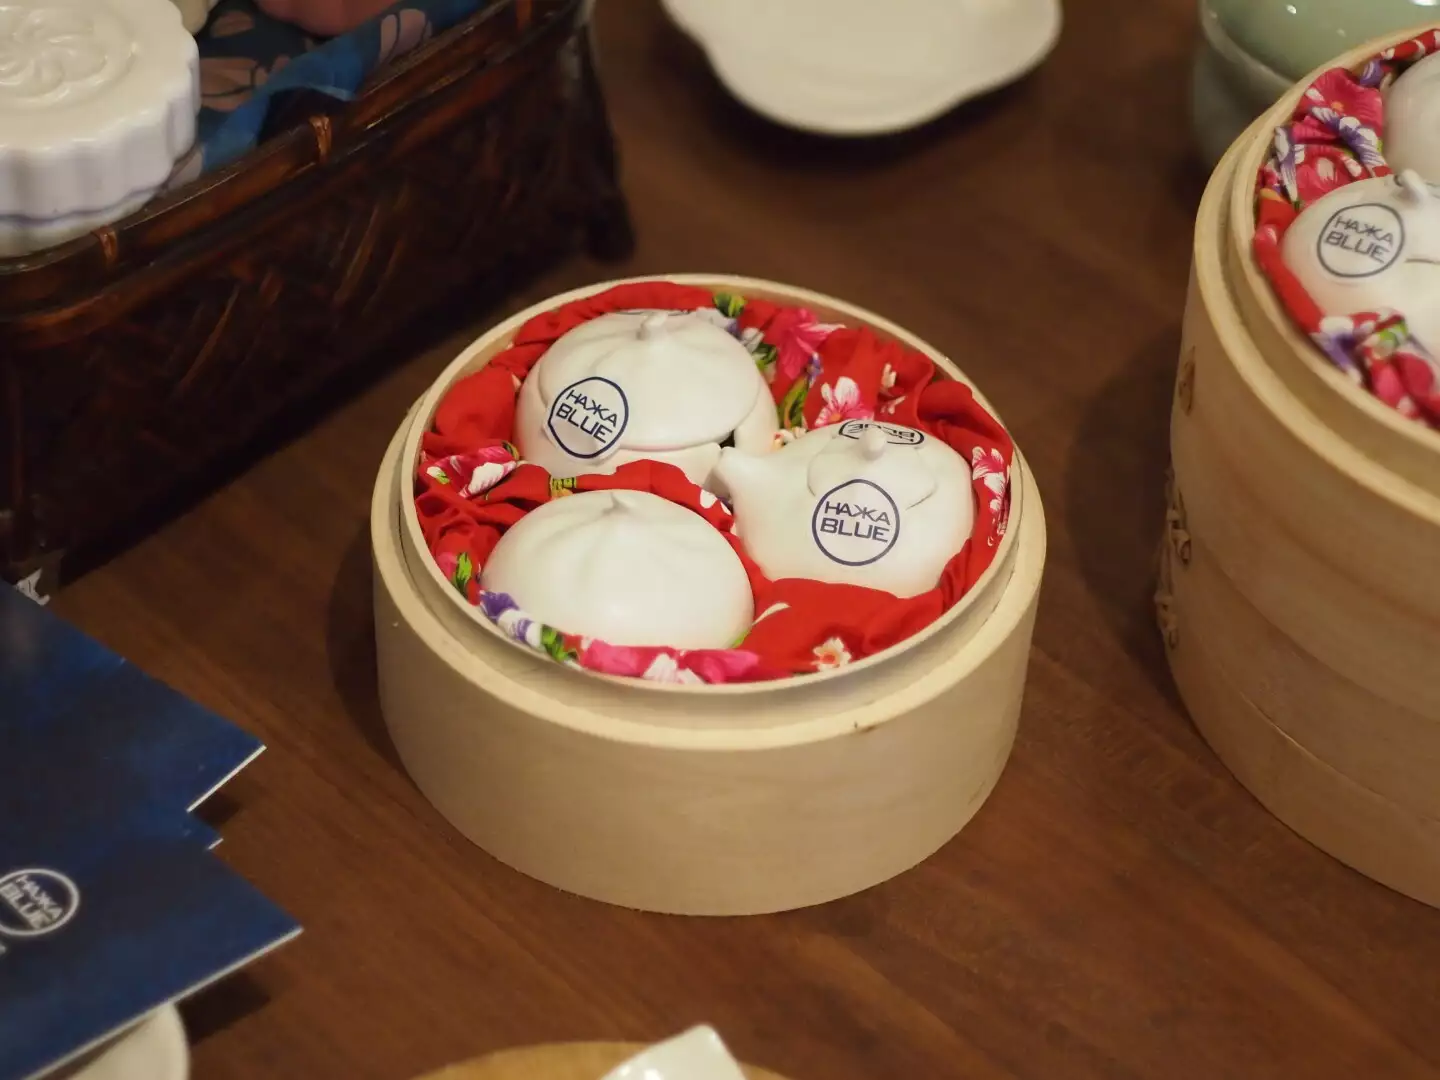 小籠包為台灣著名美食，深受國外觀光客喜愛。台客藍製作的小籠包調味罐有小巧可愛的外觀外，以白瓷細緻質感以及台客藍特有雪桐白消光釉色，更襯托出精緻工藝的品味。